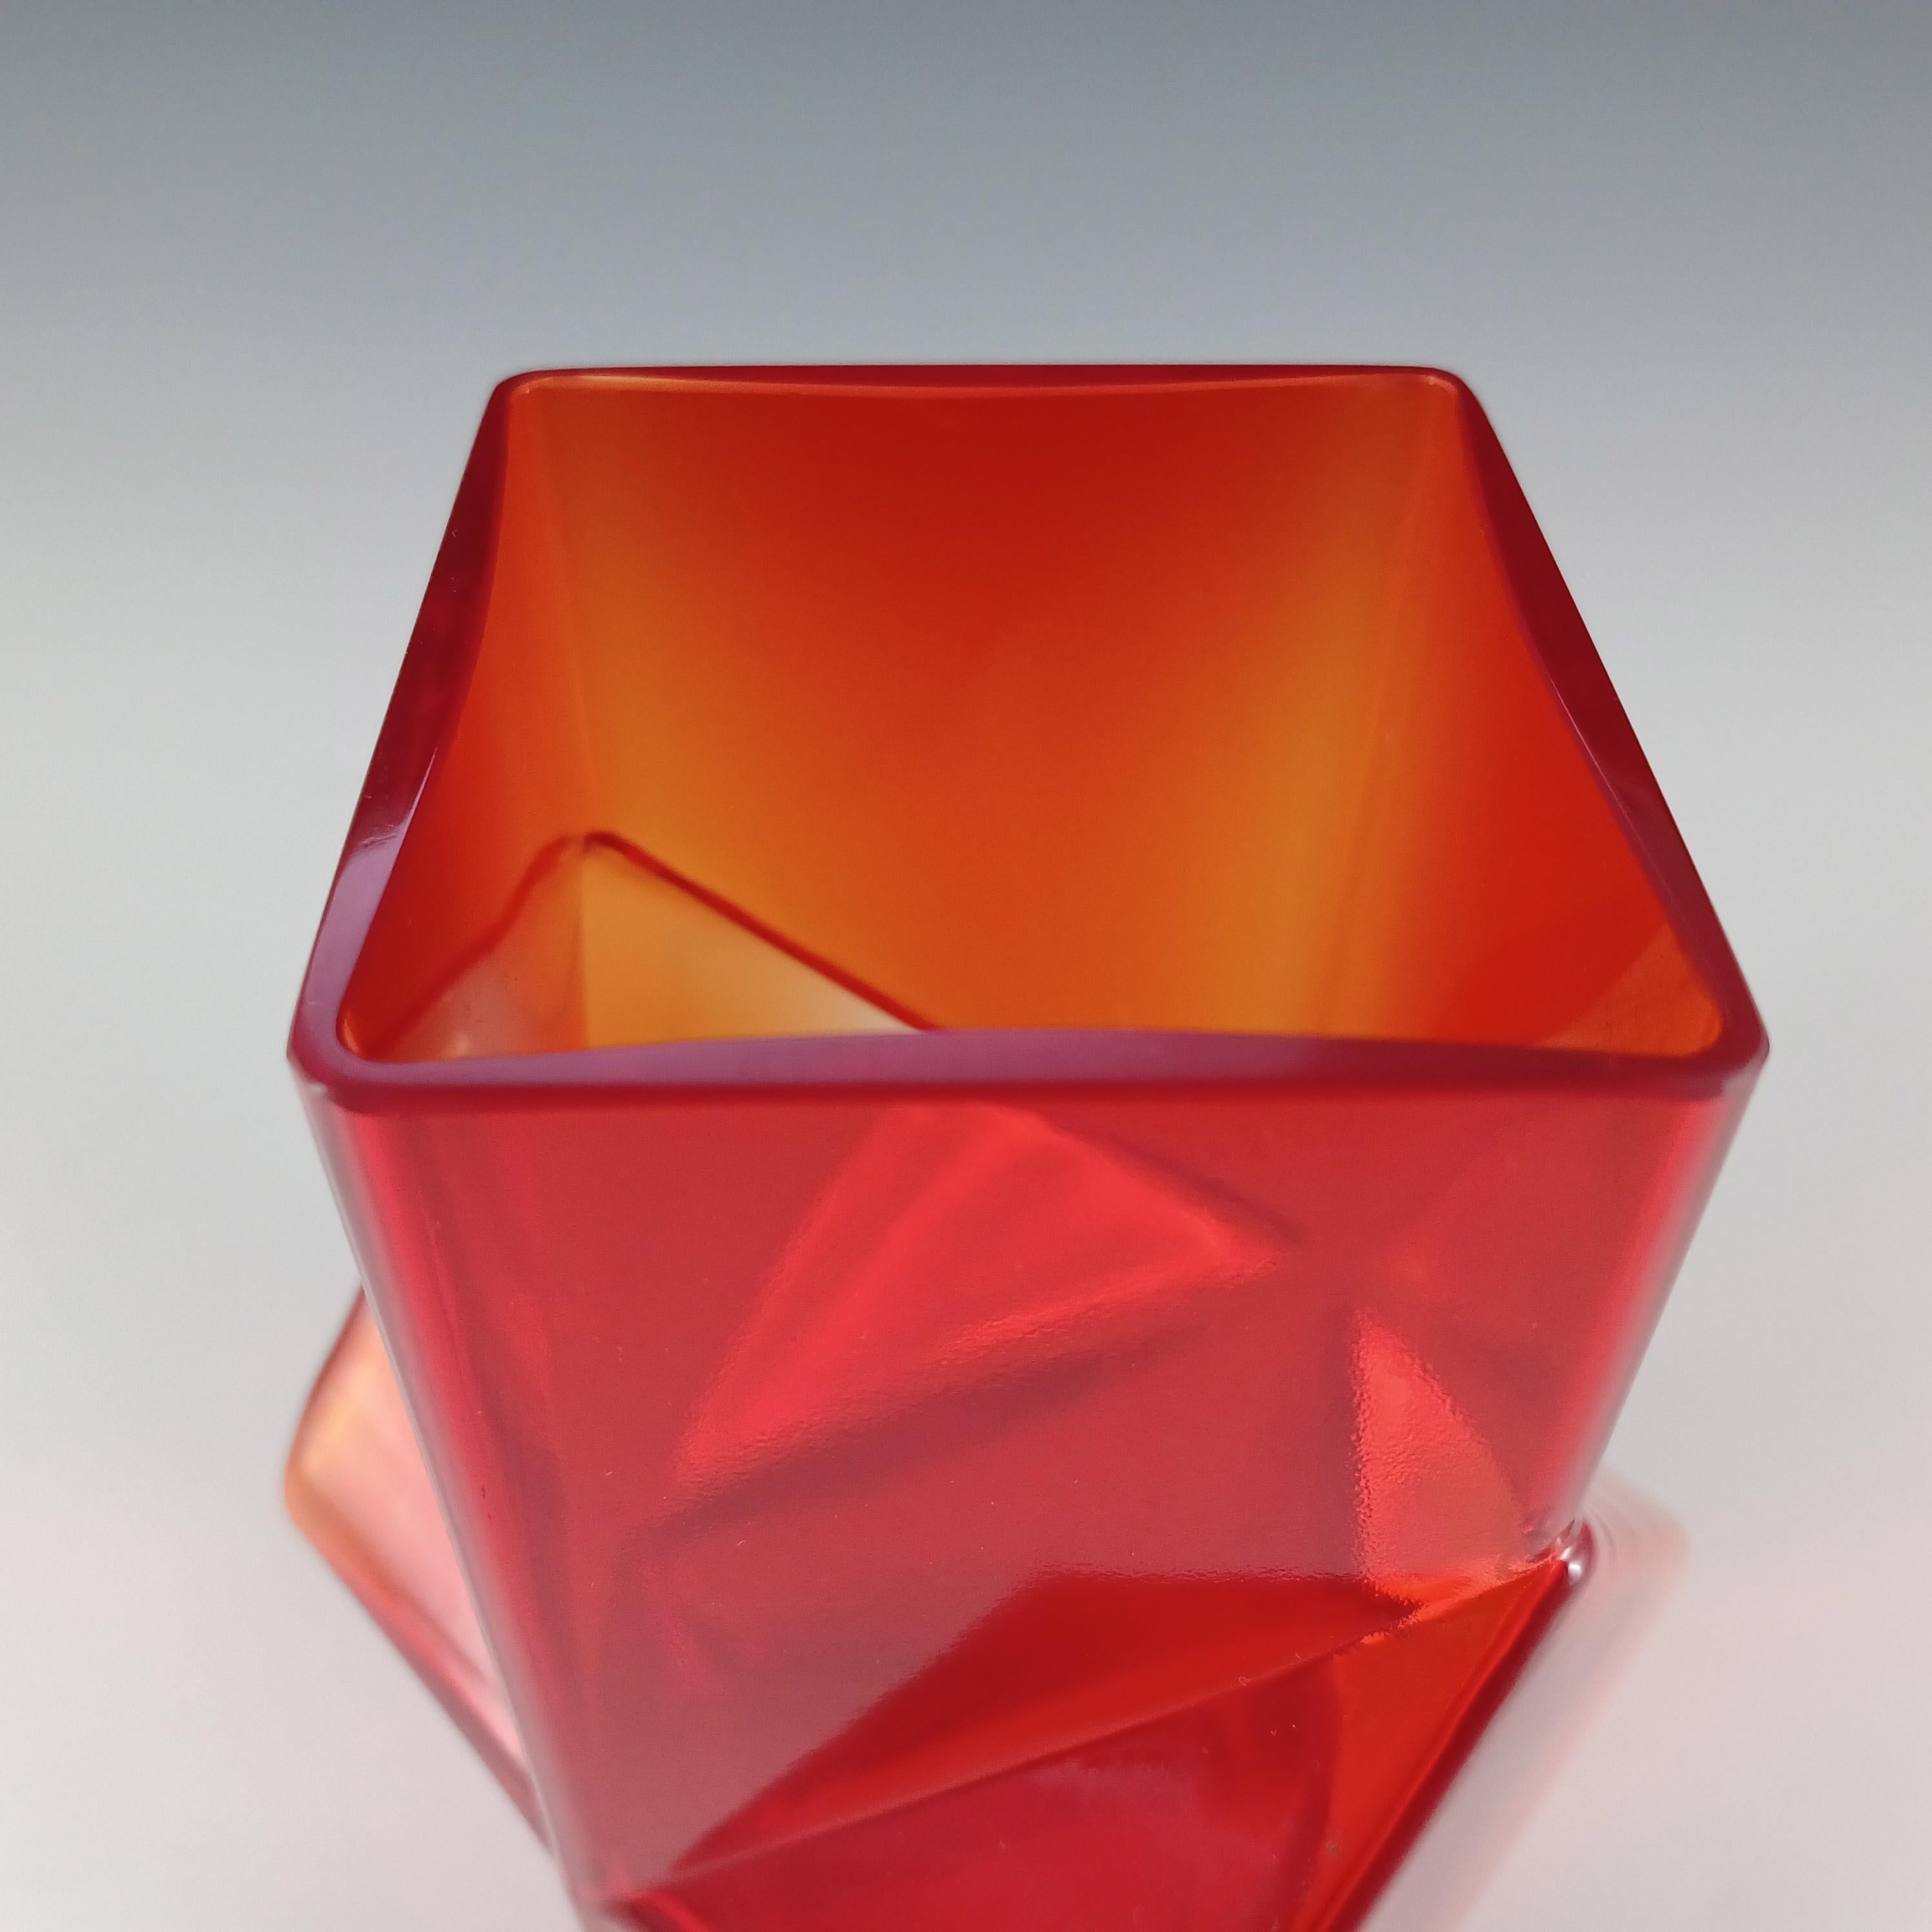 Riihimaki #1388 Erkkitapio Siiroinen Red Glass Pablo Vase For Sale 1